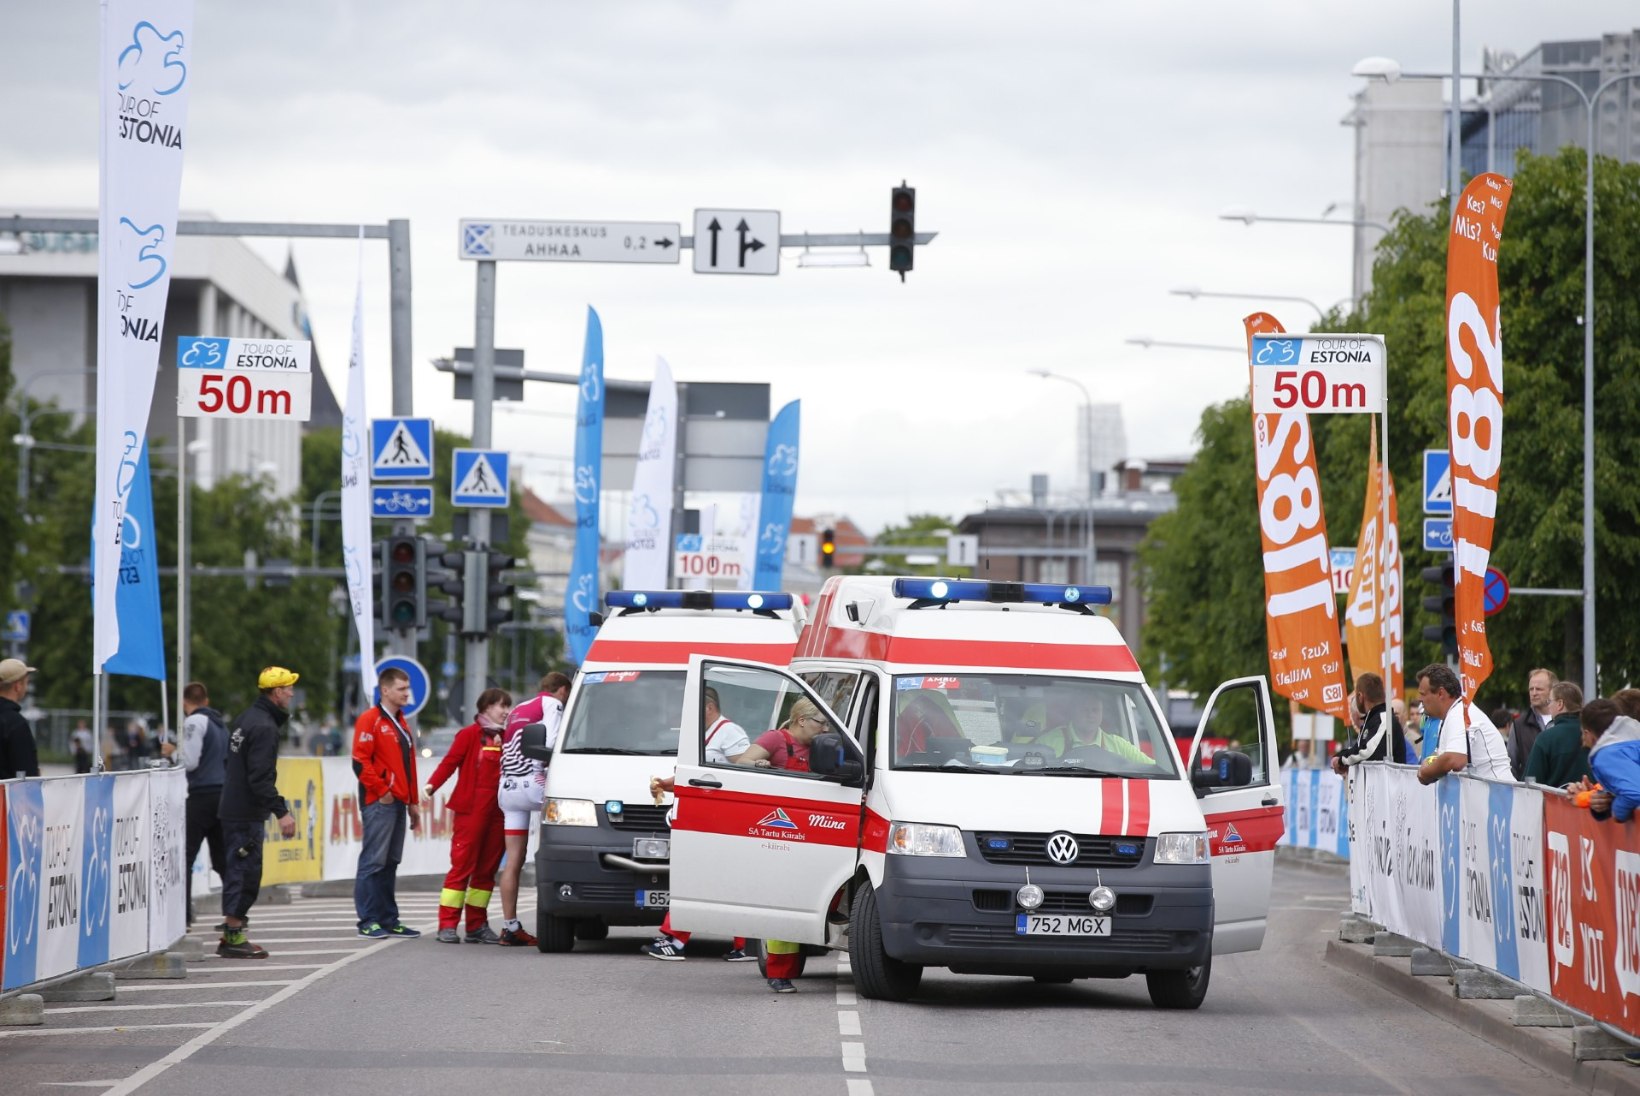 FOTOD: Sakslase verine kukkumine Tour of Estonial, mis võttis eestlaselt lootuse poodiumikohale